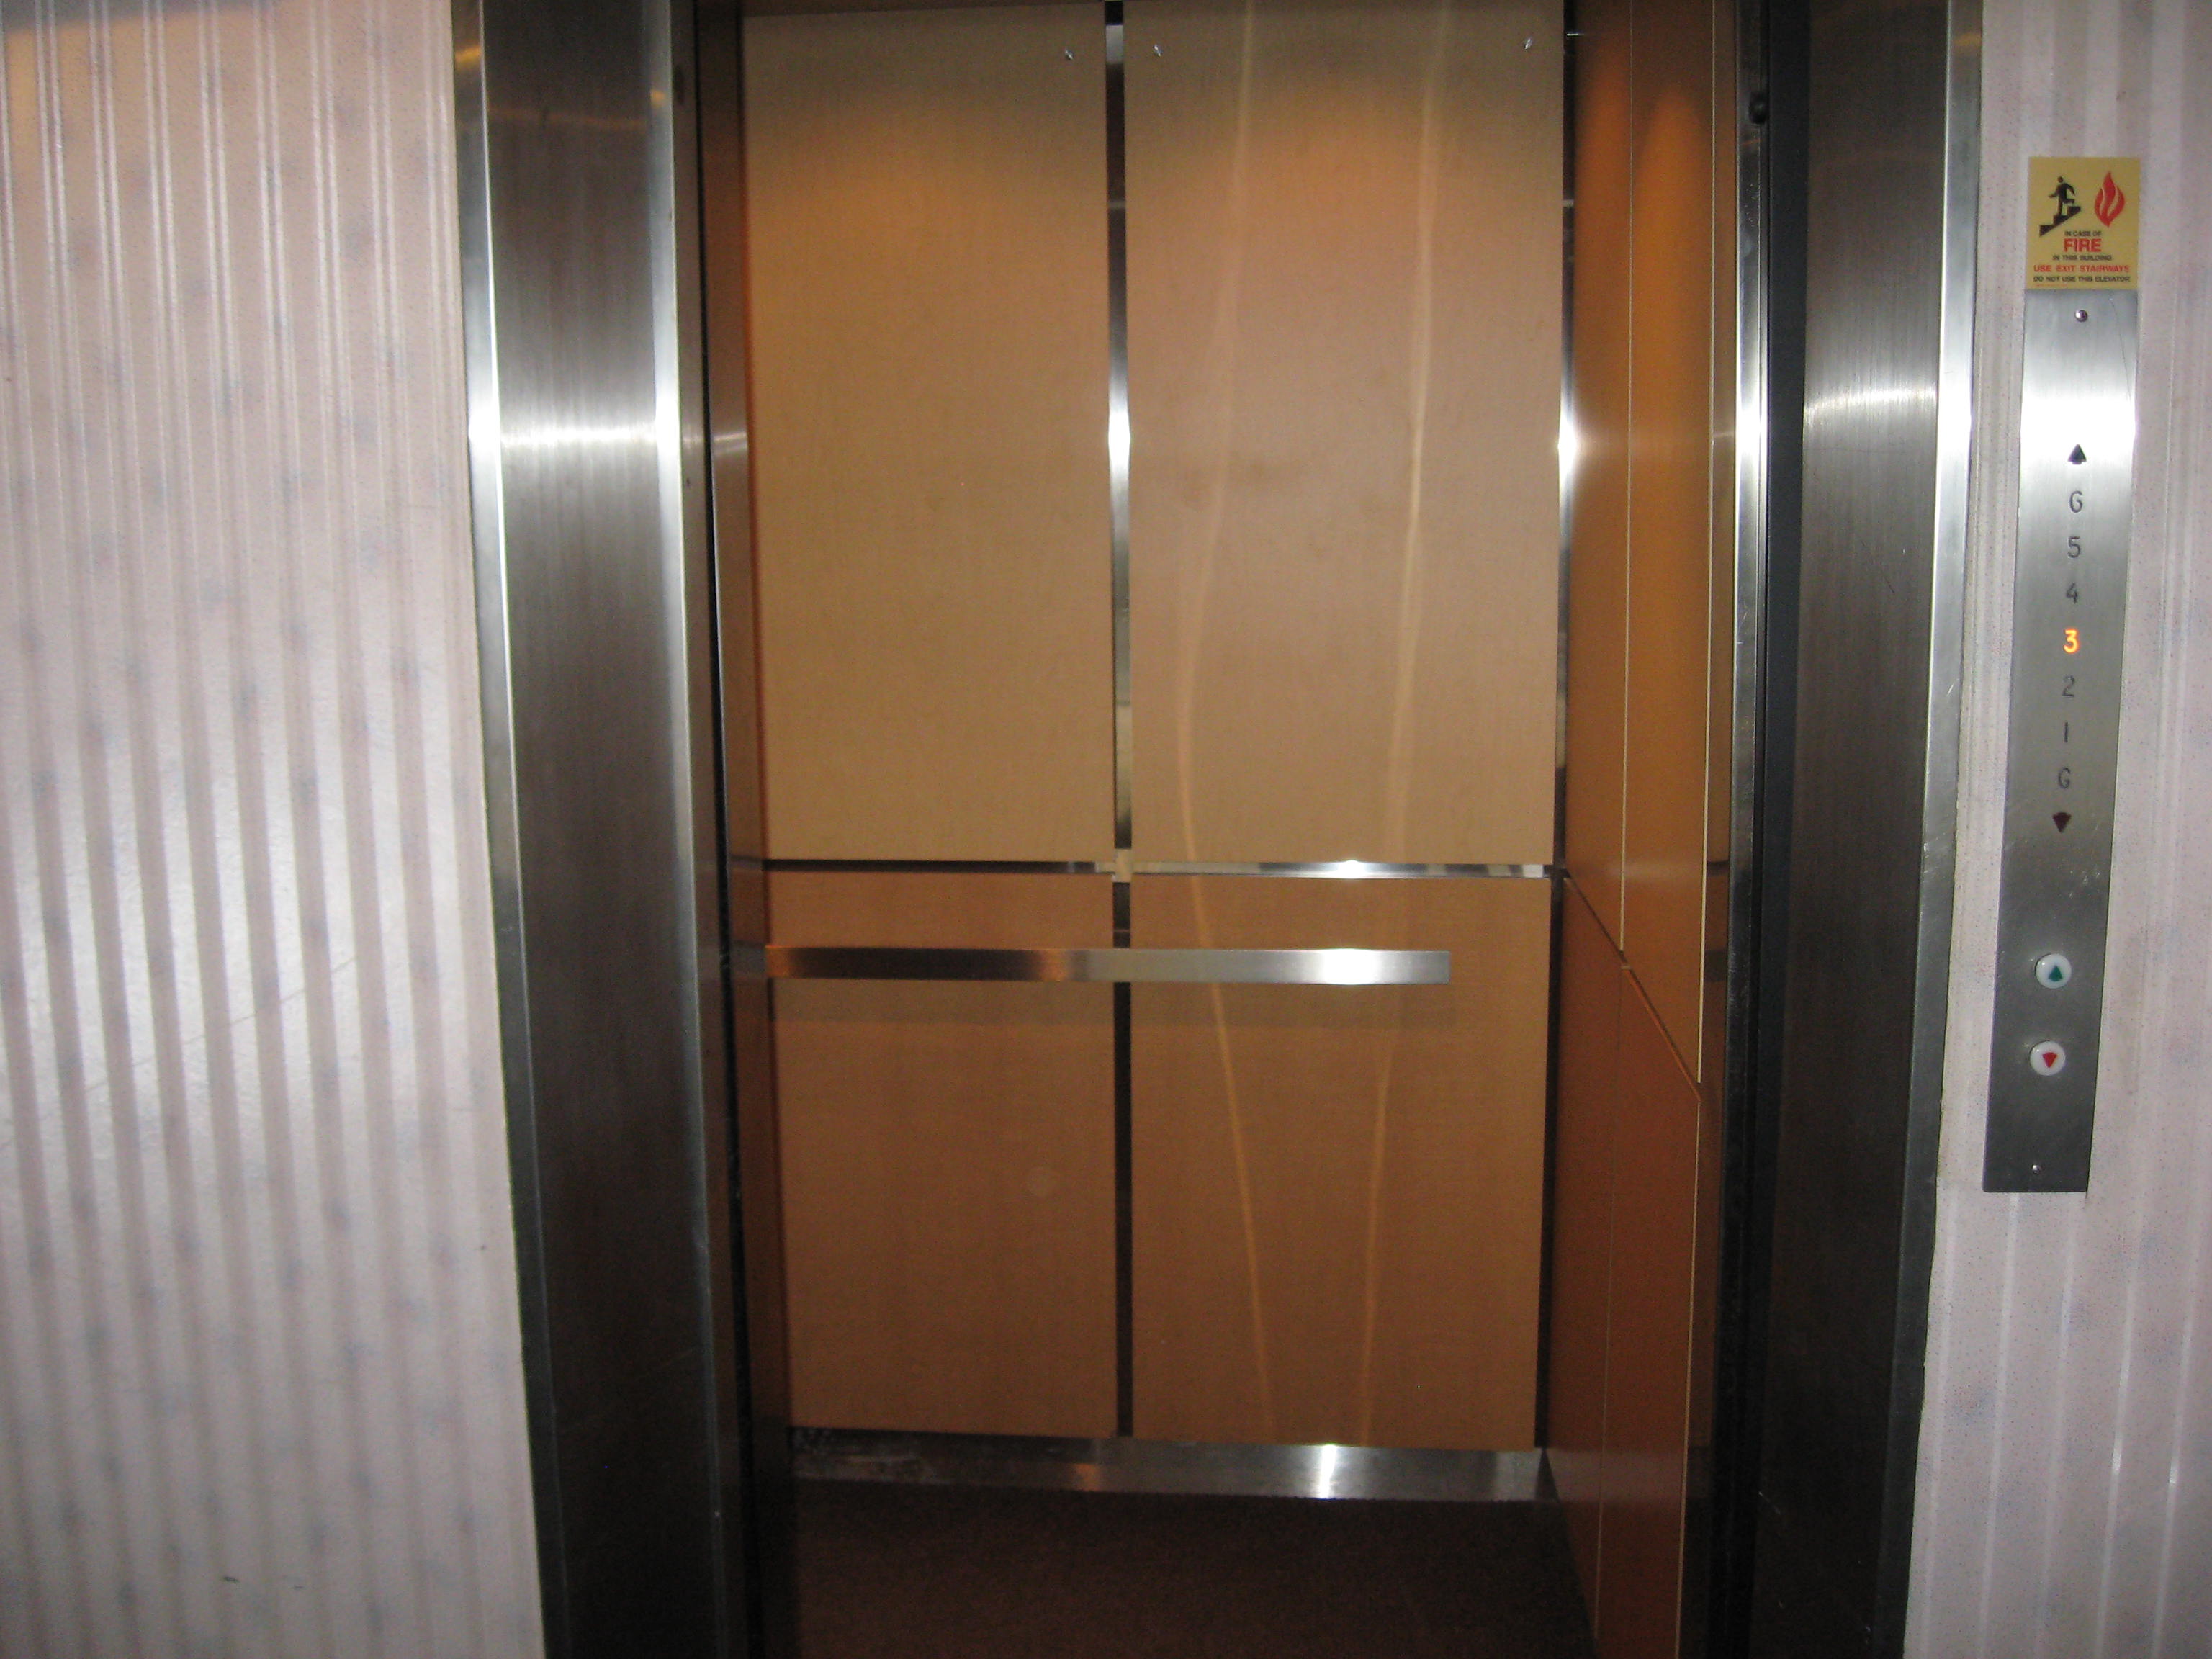 Elevator Cab Interiors